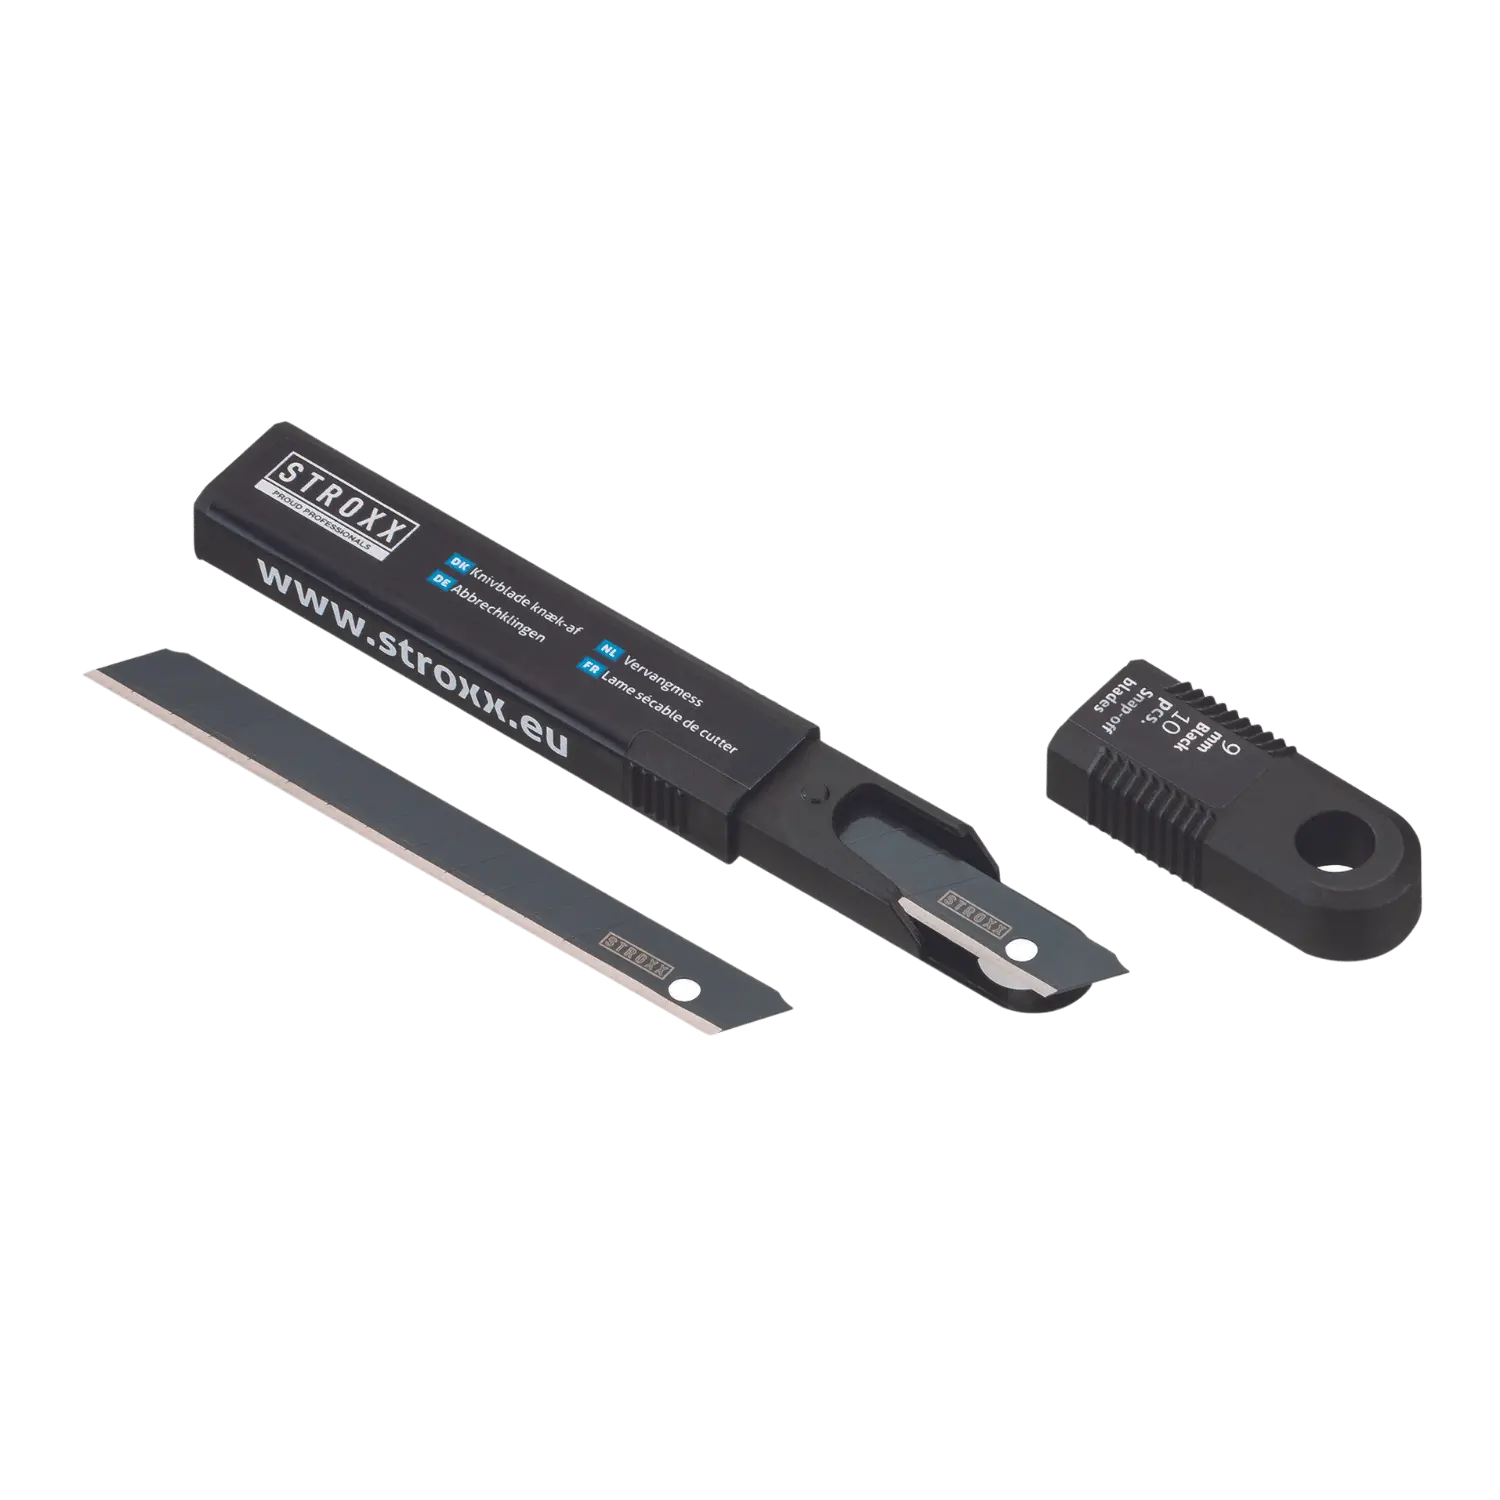 STROXX Vervangmes 25 mm Zwart Blister 10St - Set van 10 zwarte vervangmessen van 25 mm in een blisterverpakking.